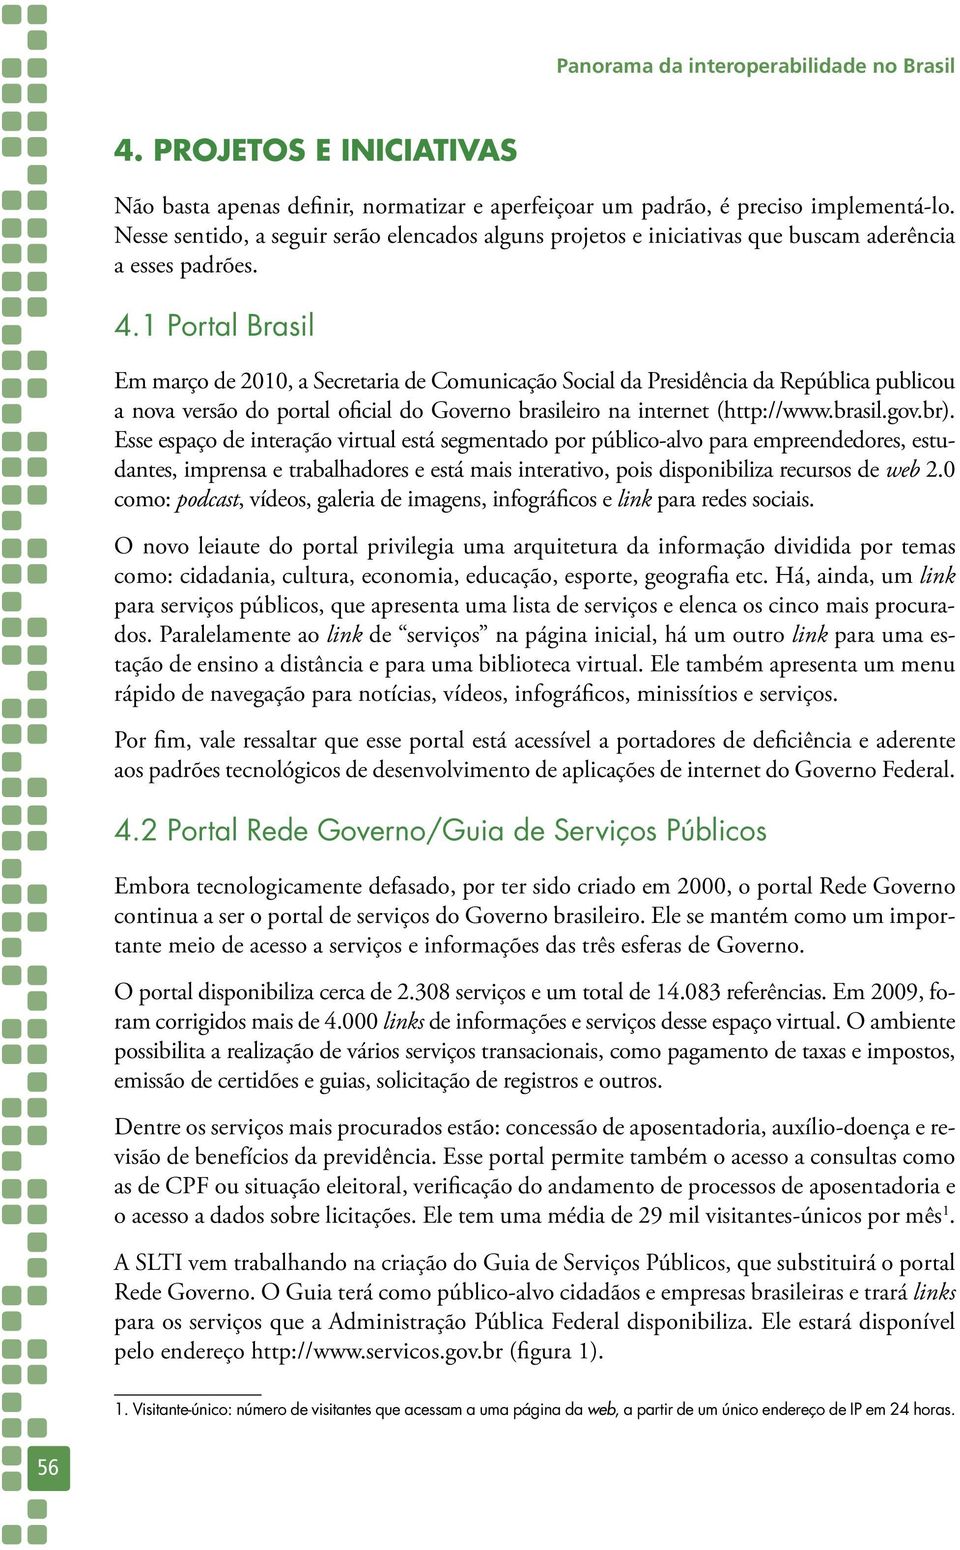 1 Portal Brasil Em março de 2010, a Secretaria de Comunicação Social da Presidência da República publicou a nova versão do portal oficial do Governo brasileiro na internet (http://www.brasil.gov.br).